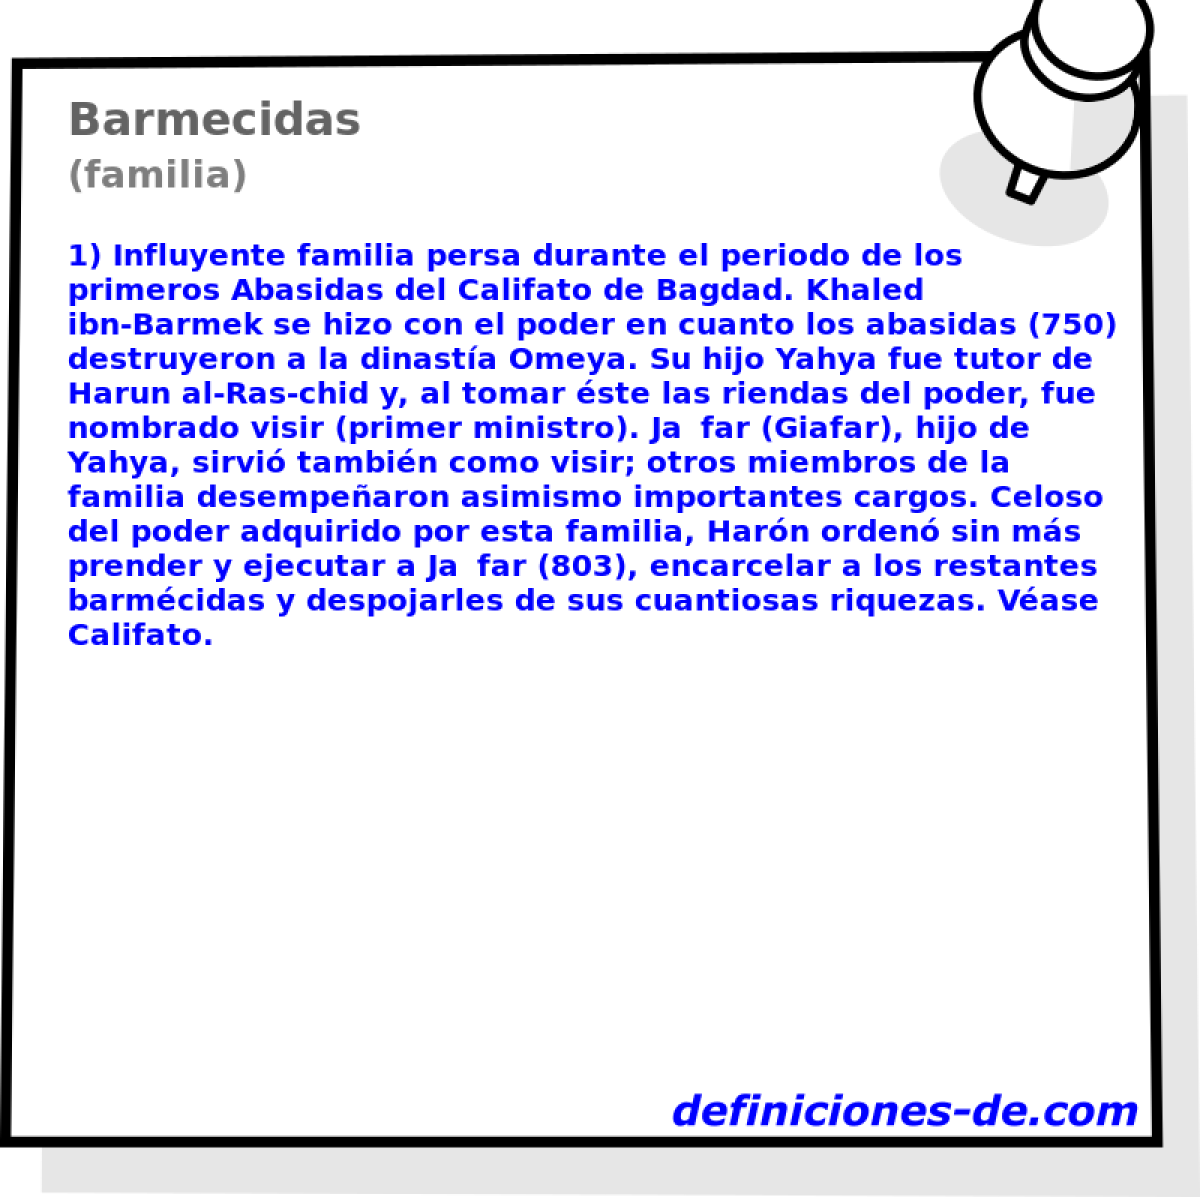 Barmecidas (familia)